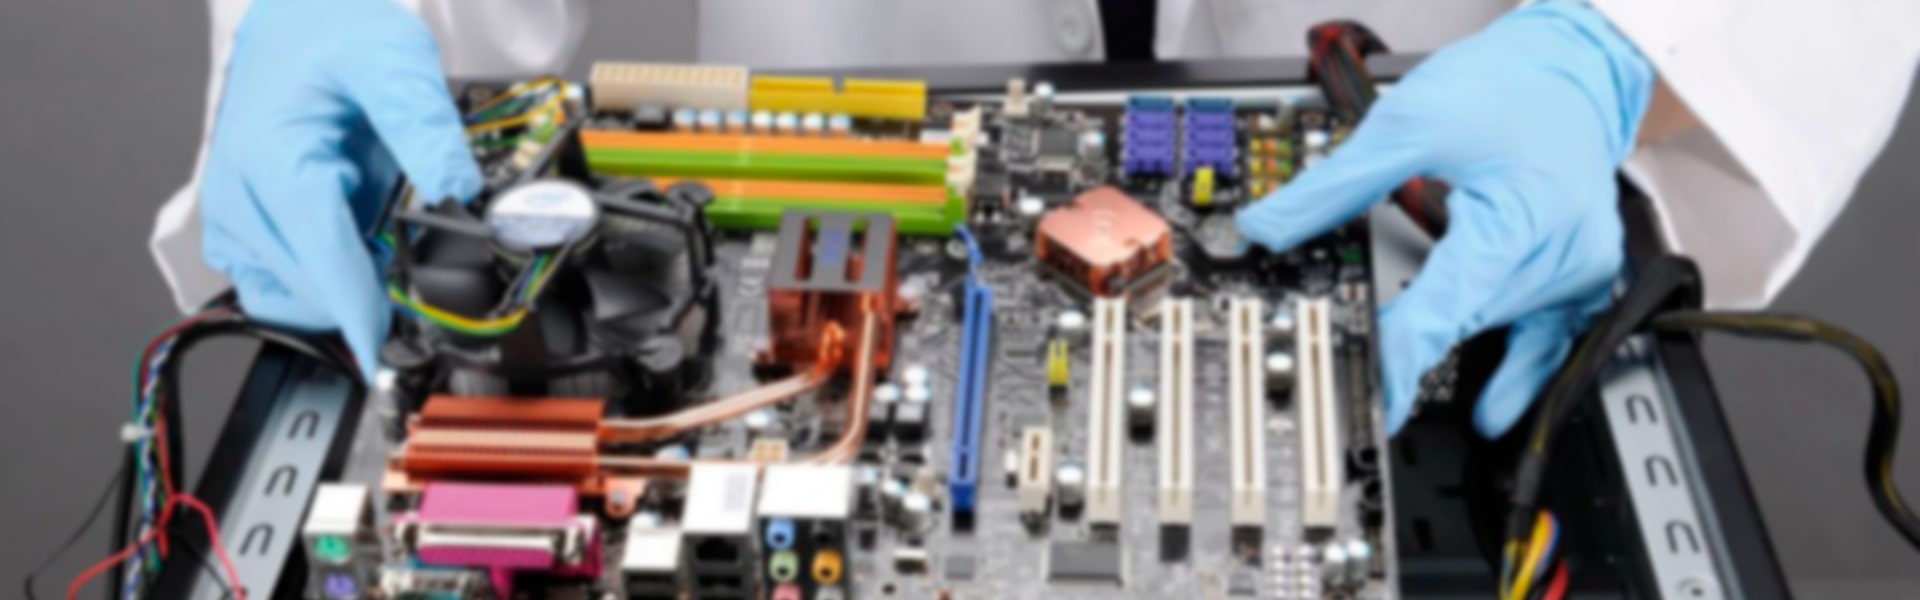 PC Repair | CADMaster.on.kg